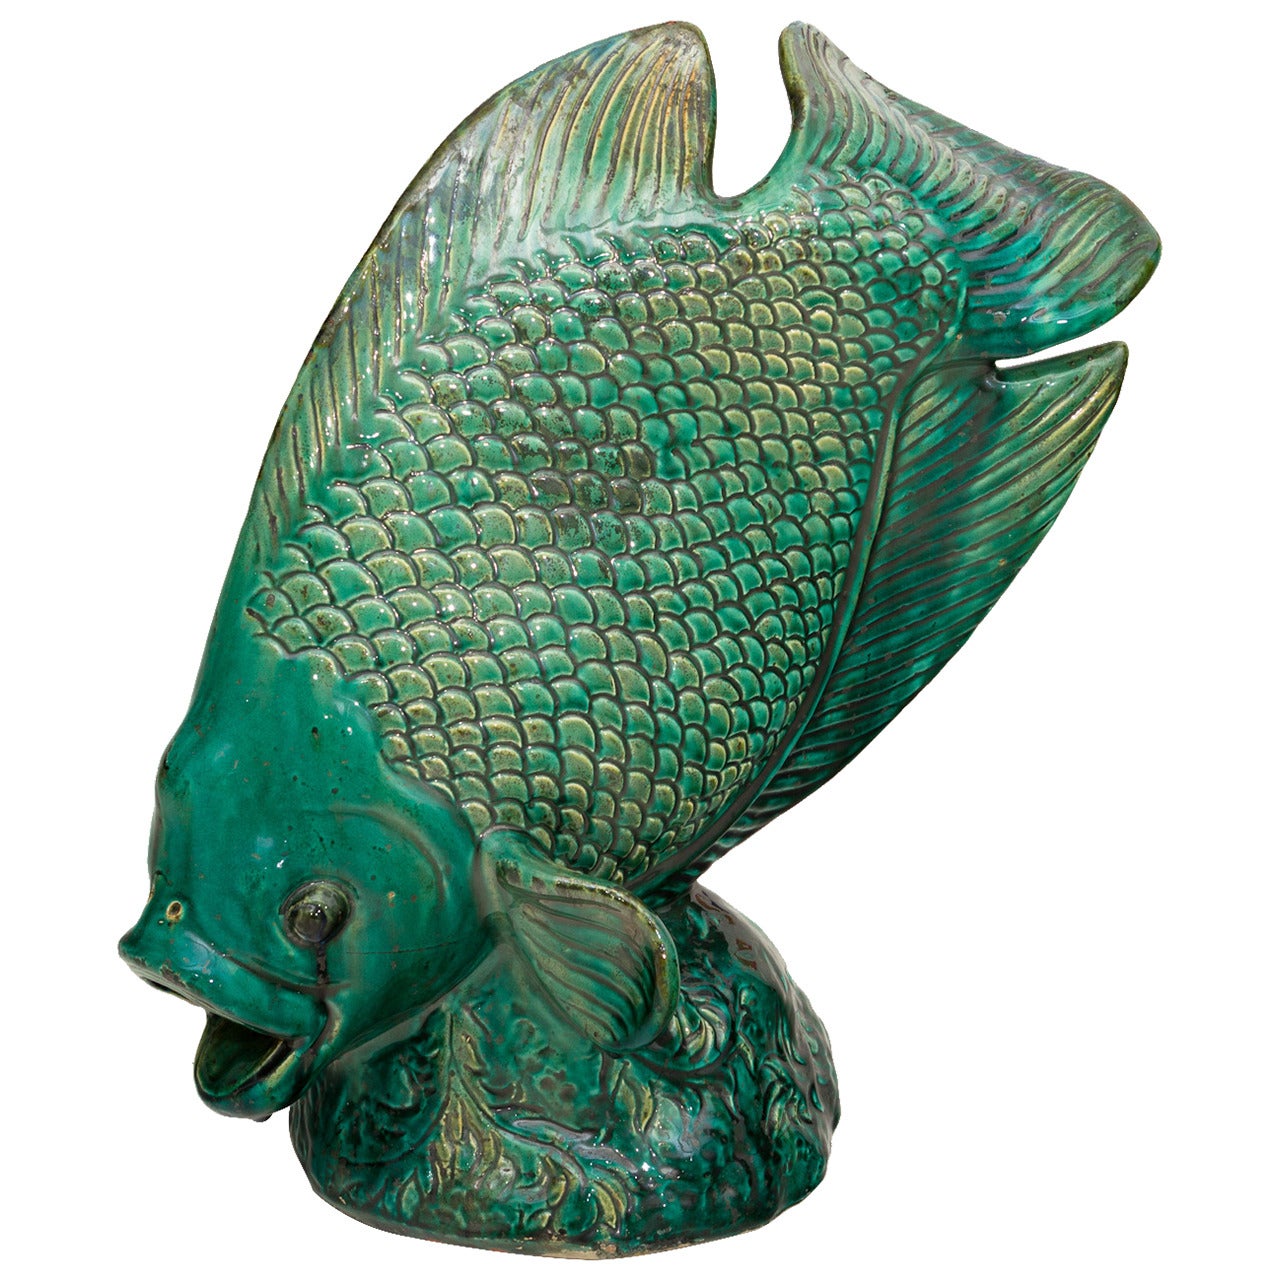 Beautiful Emerald Green Glazed Ceramic Sculpture Representing a Fish